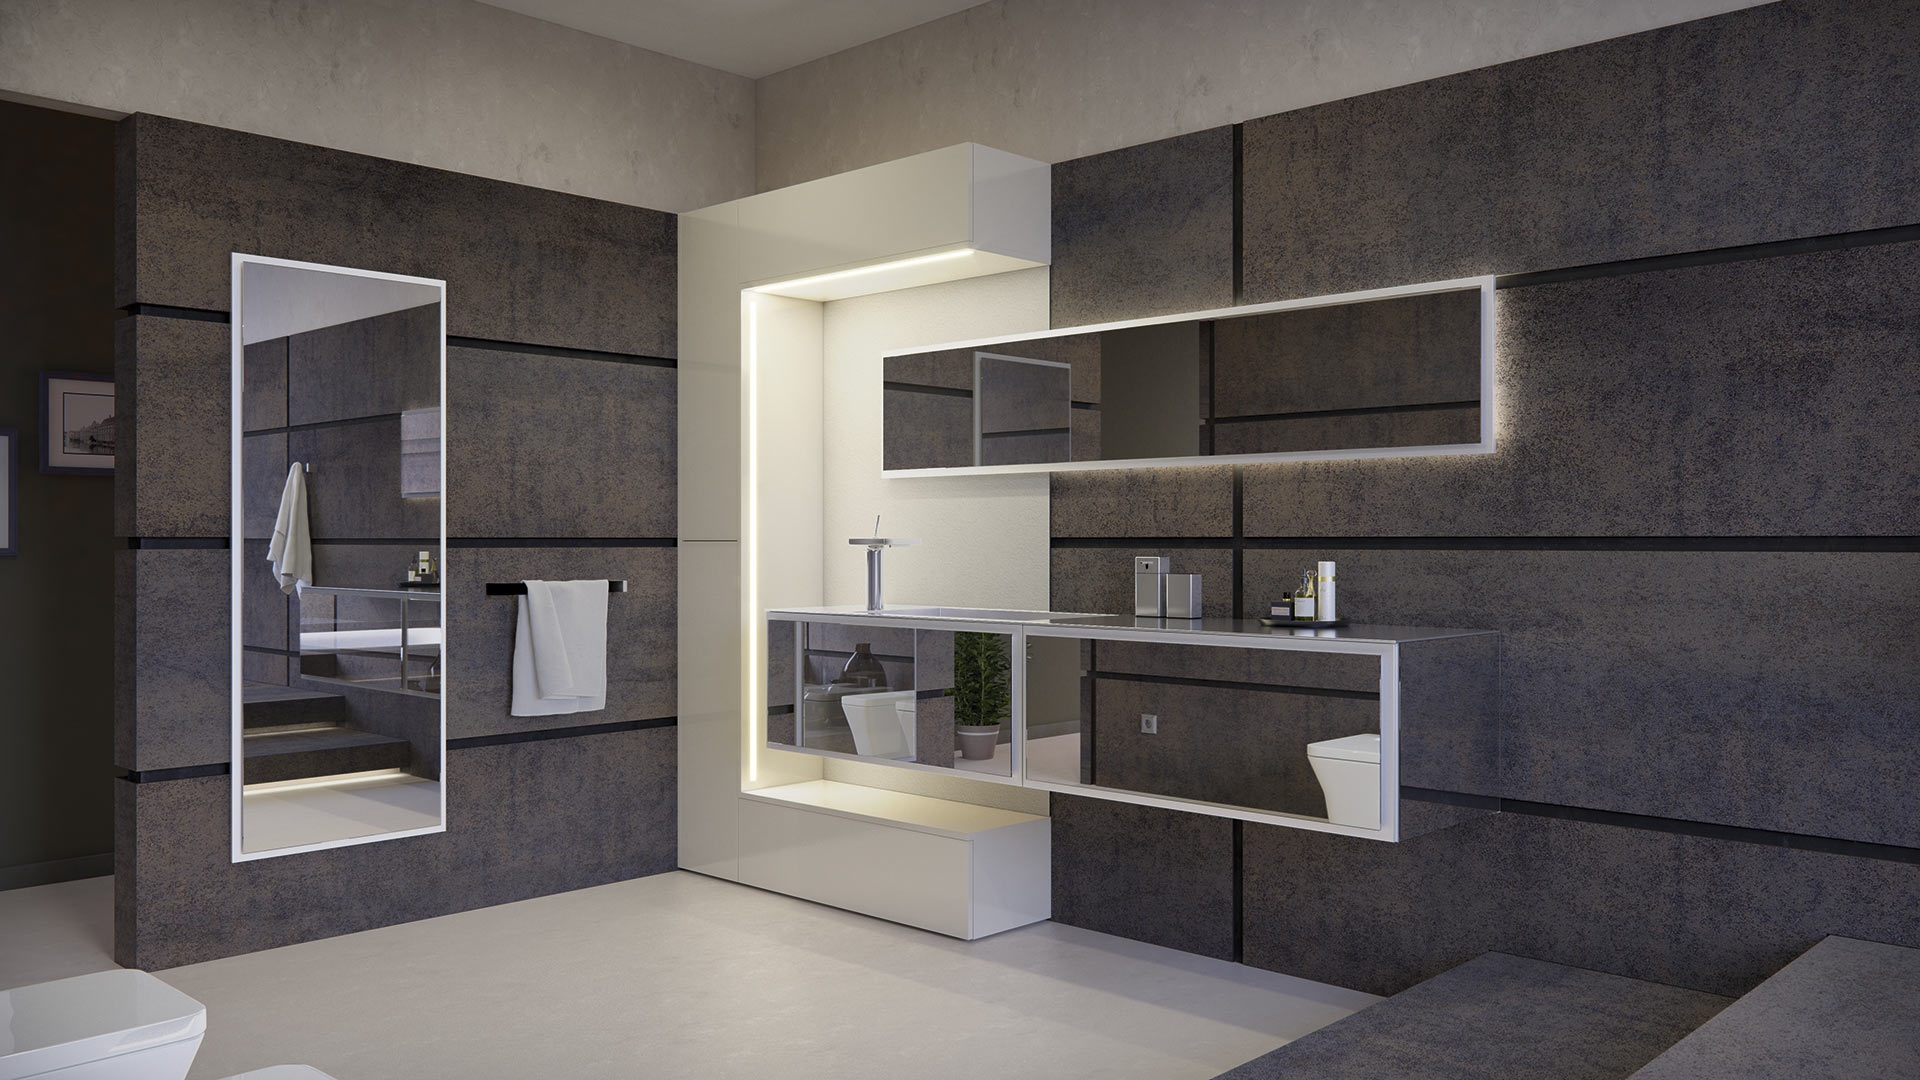 Mobiliario de baño en color blanco que crea una estética minimalista e incorpora iluminación en sus componentes